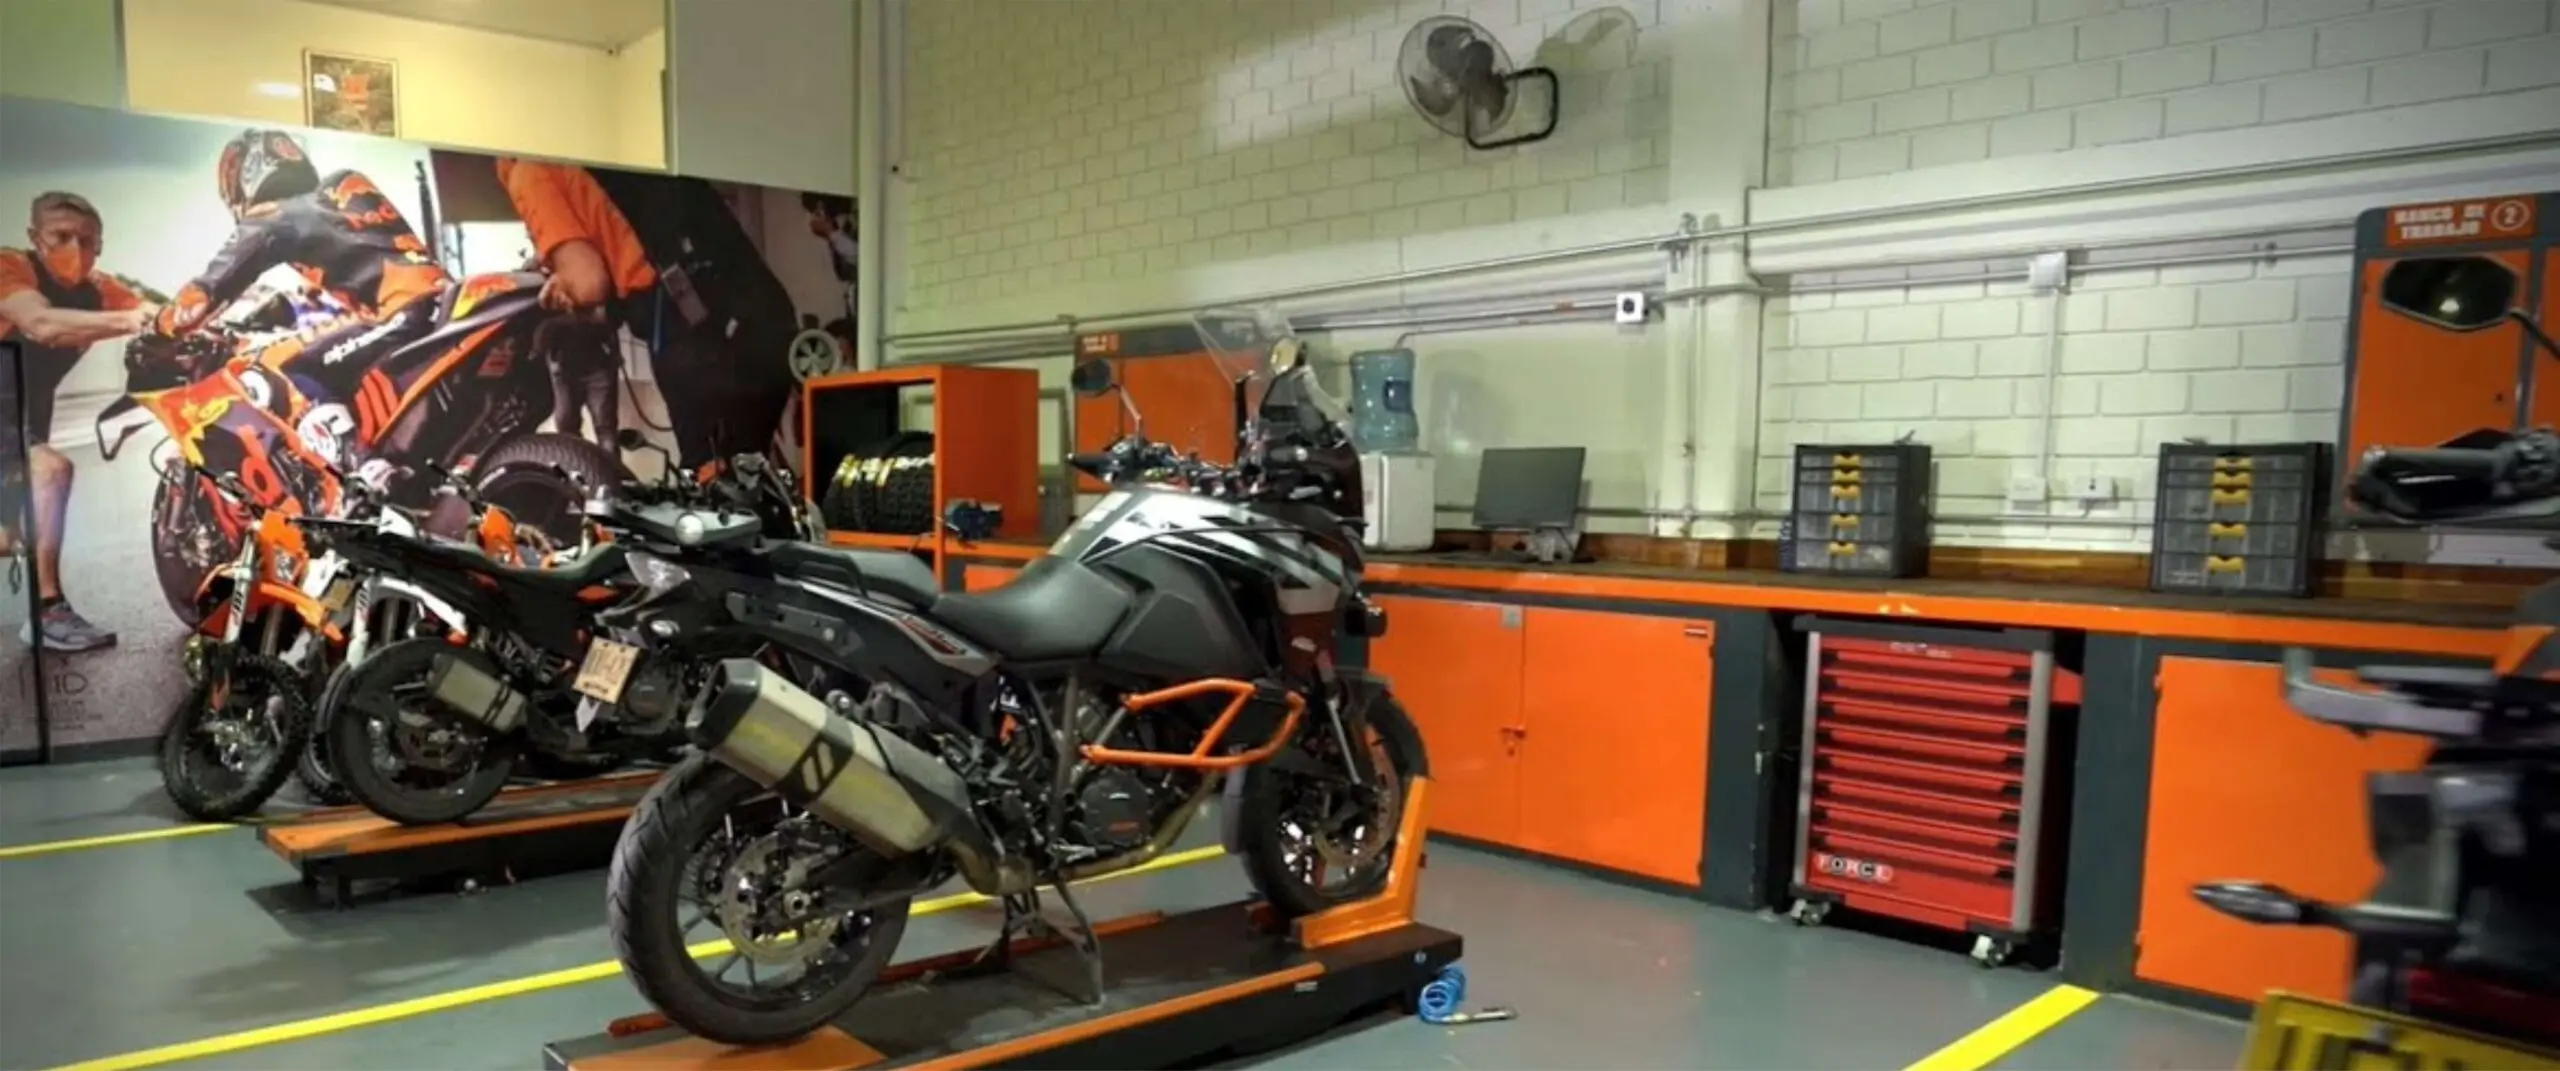 taller motos - Cómo se le llama a los que arreglan motos